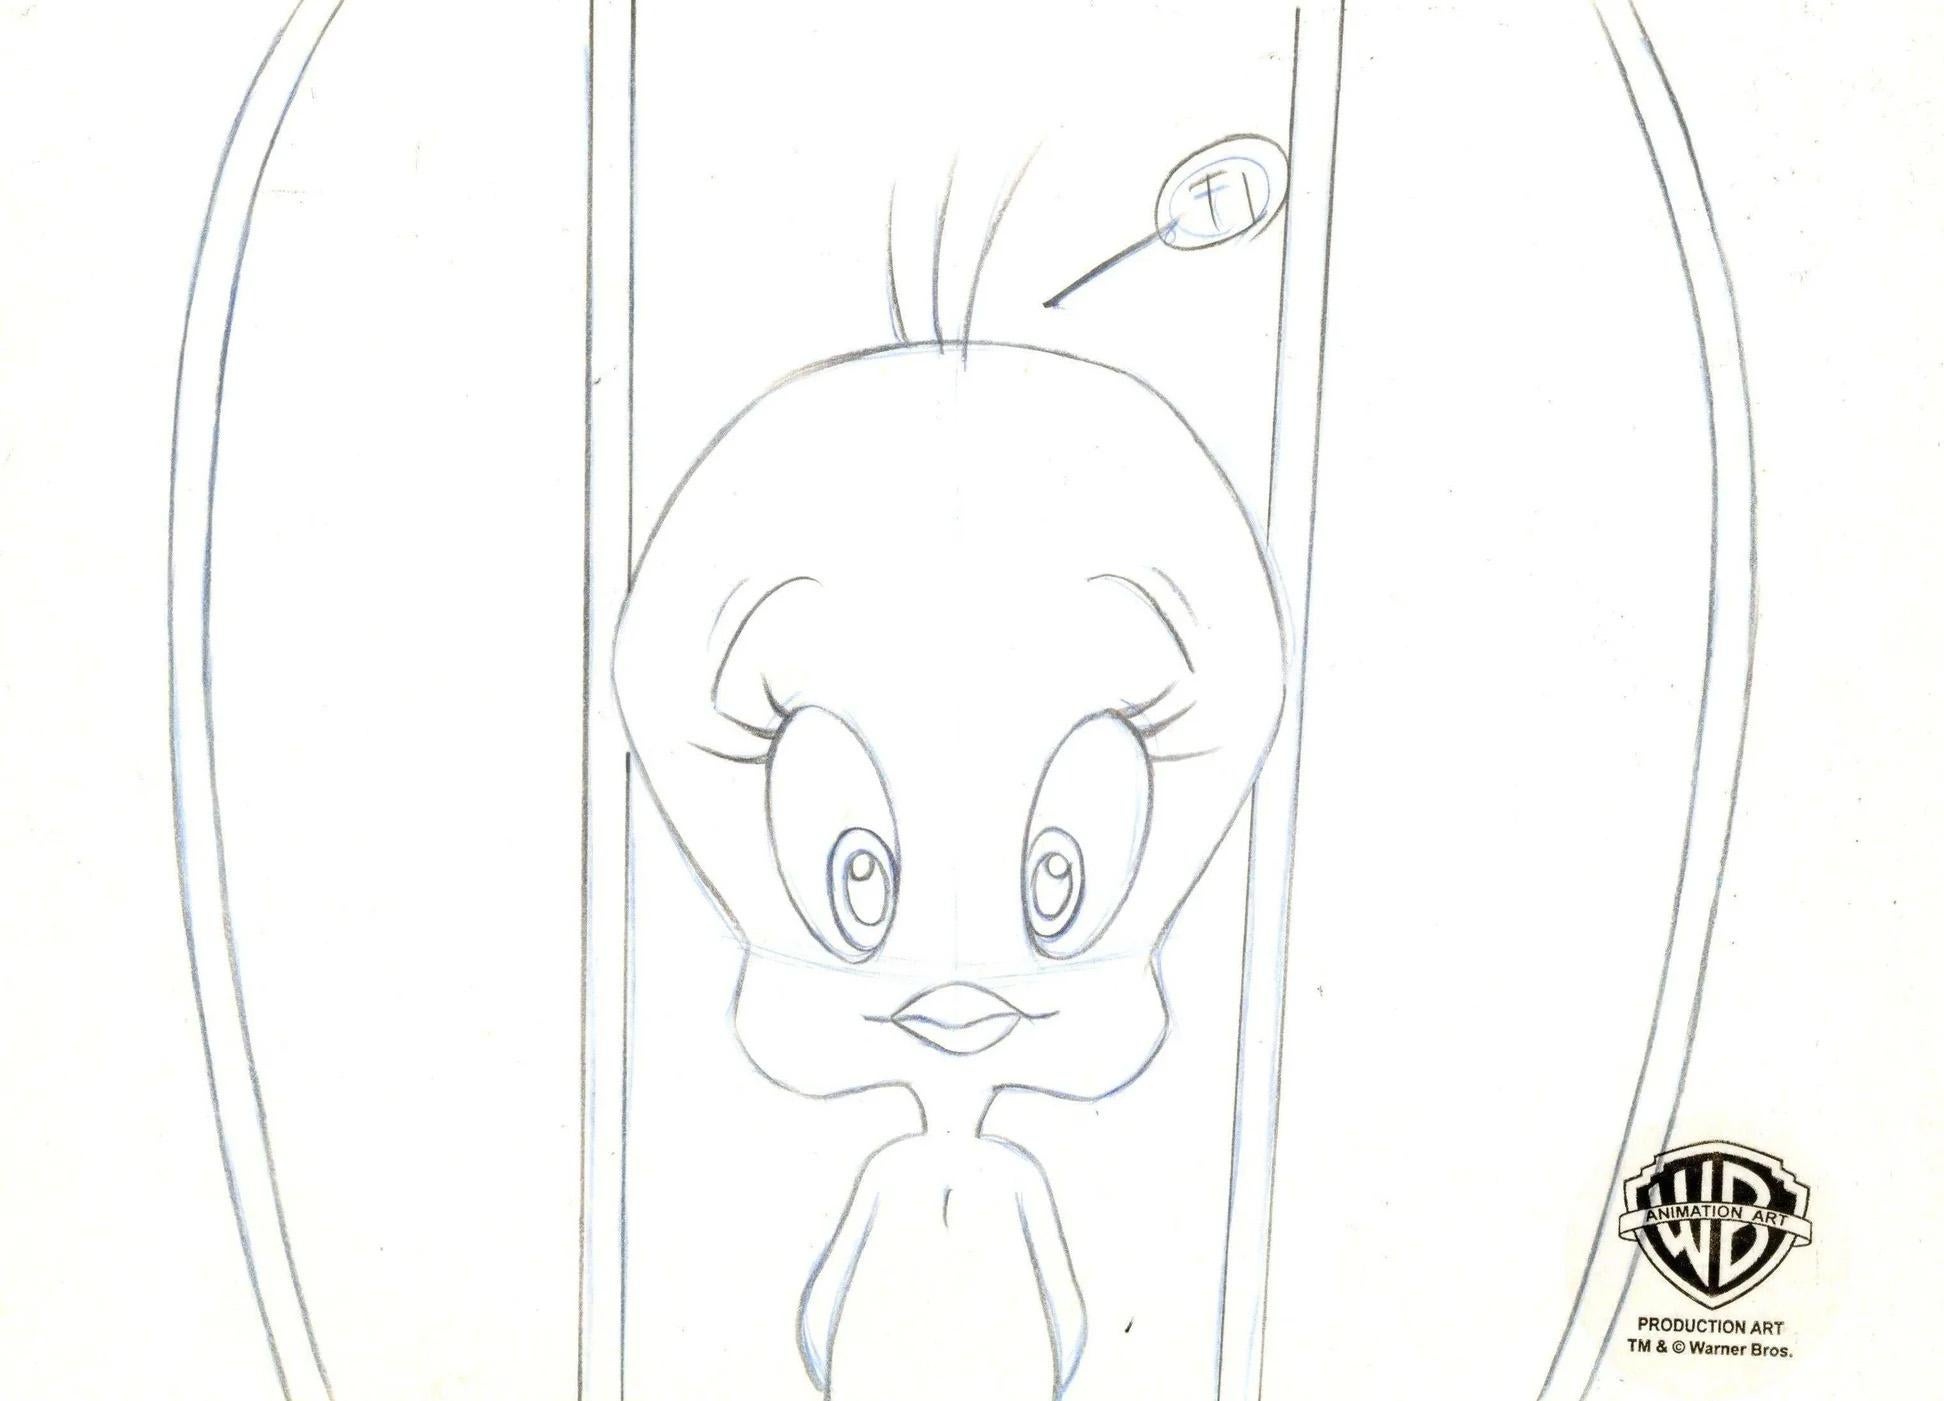 Looney Tunes Original Production Cel mit passender Zeichnung: Tweety (Pop-Art), Art, von Looney Tunes Studio Artists